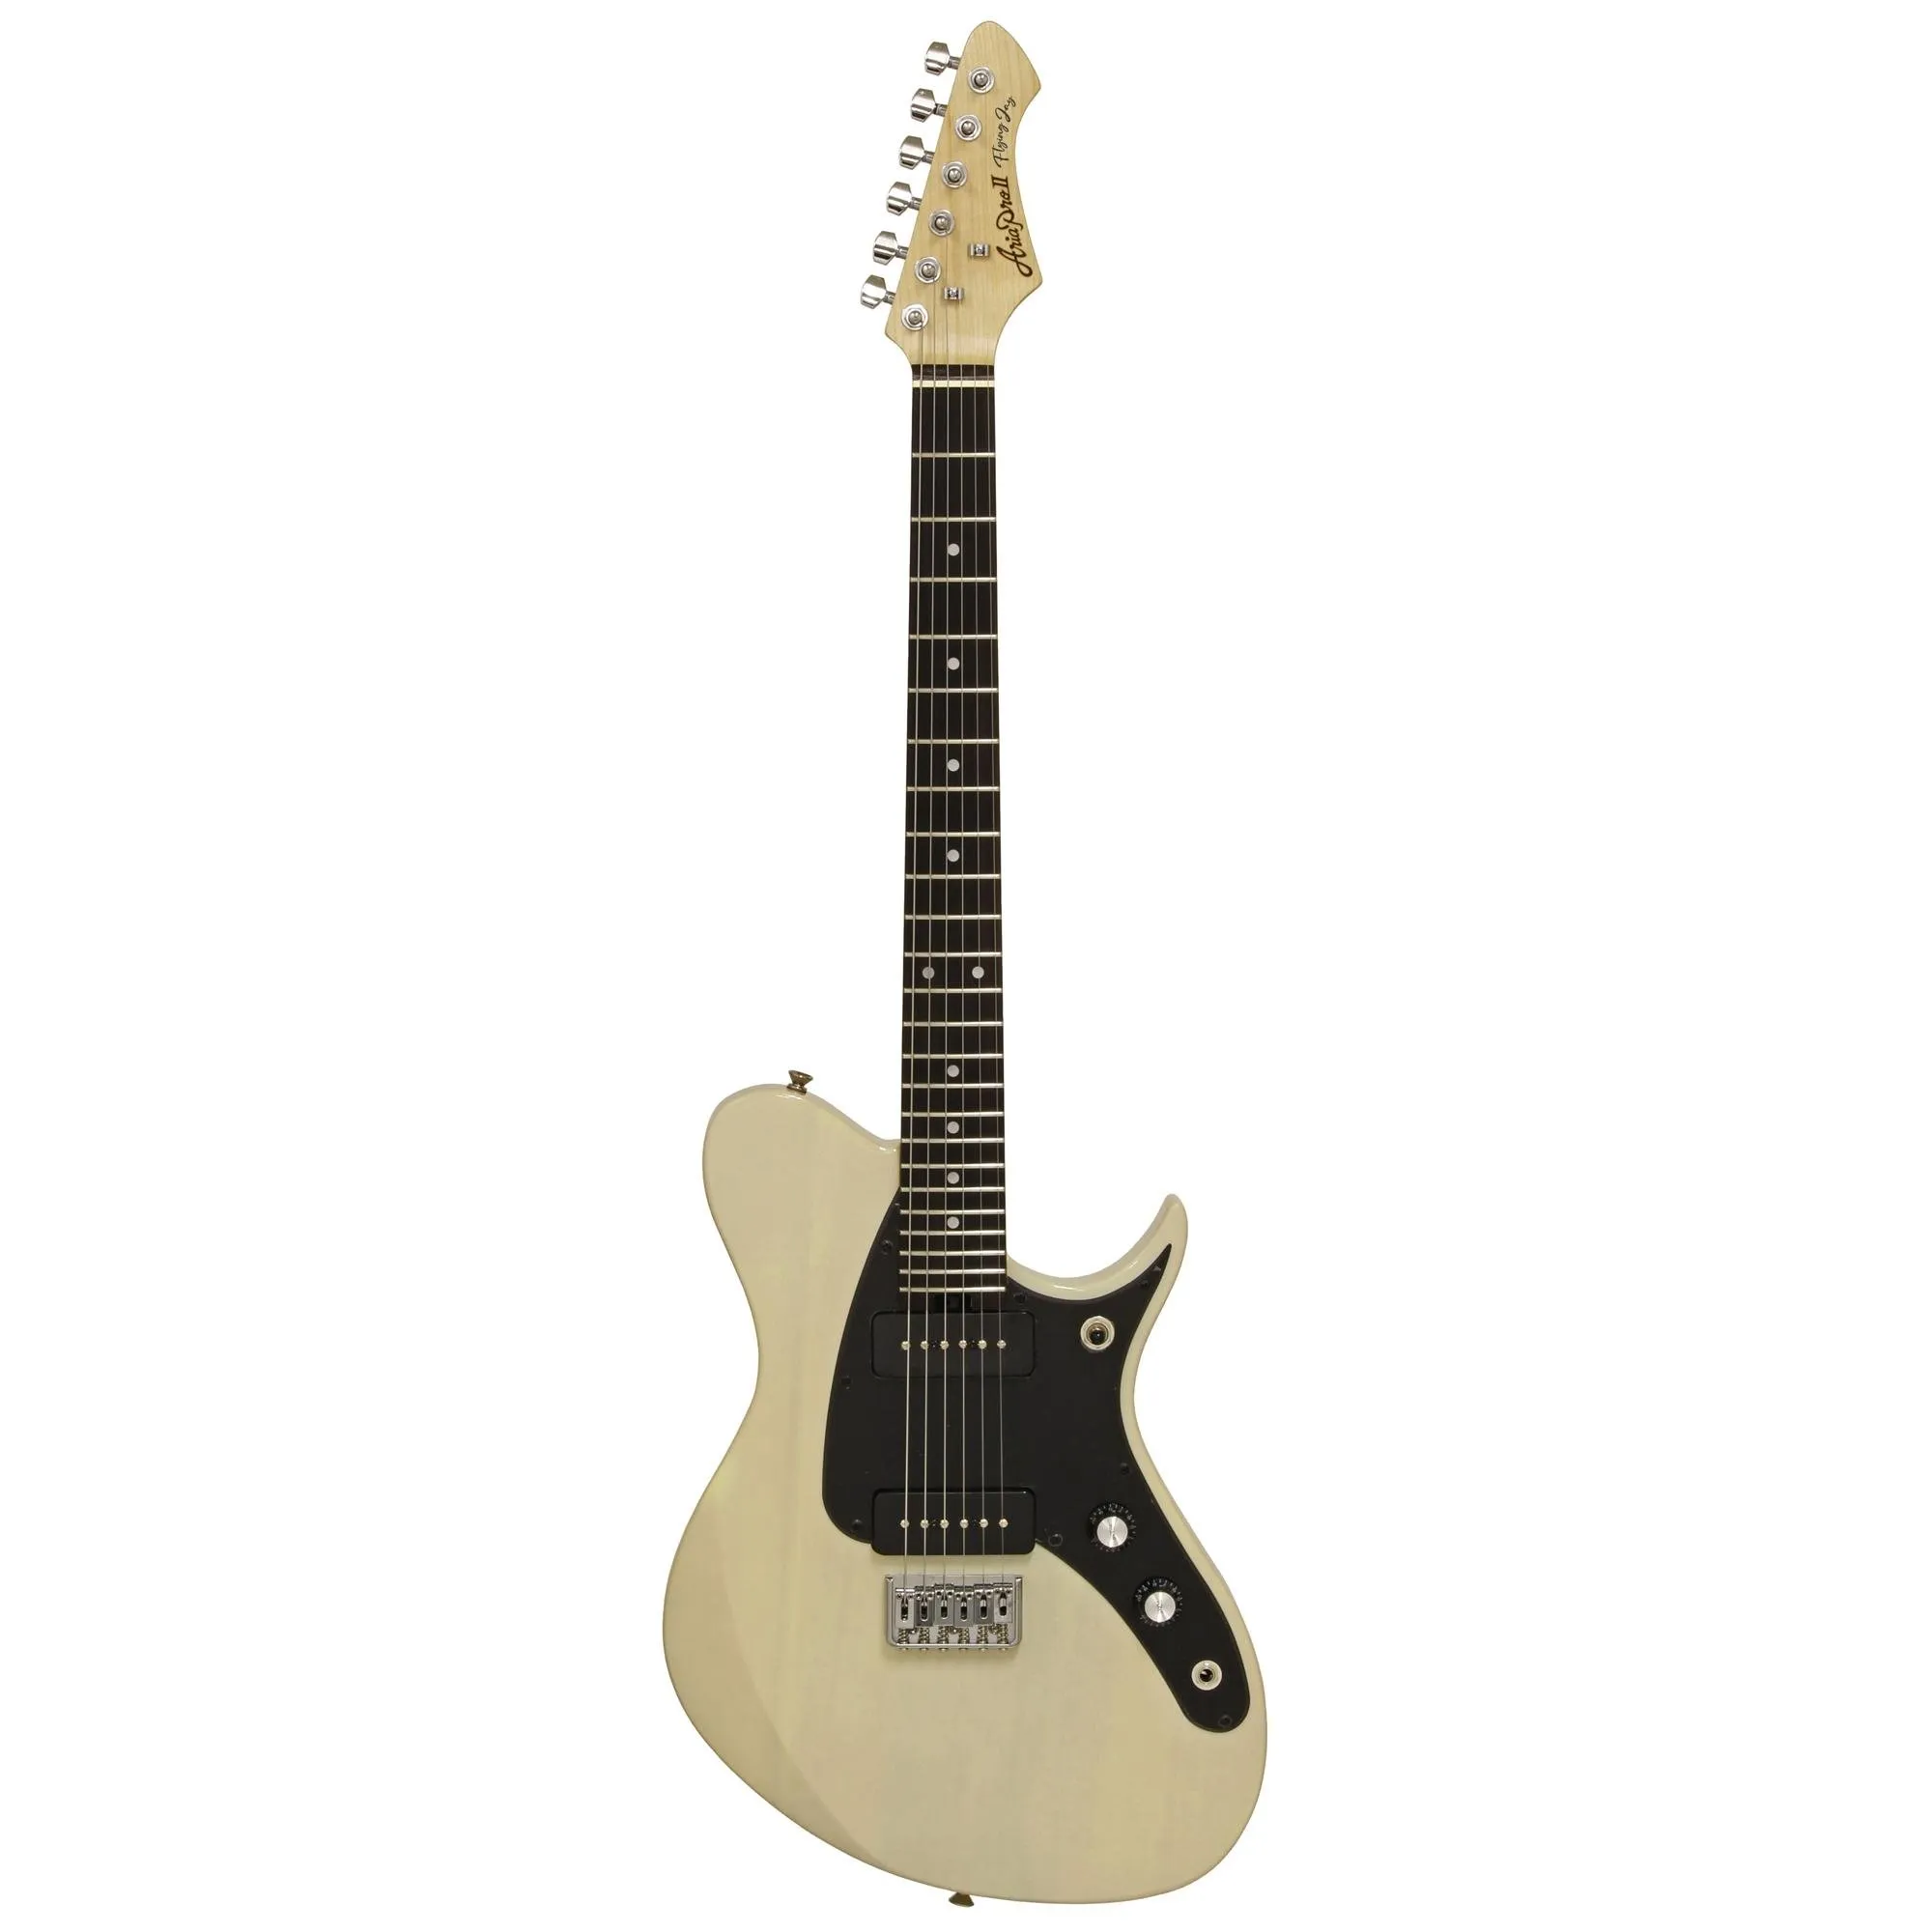 Guitarra Aria Pro II J-2 See-Through Vintage White por 0,00 à vista no boleto/pix ou parcele em até 1x sem juros. Compre na loja Mundomax!